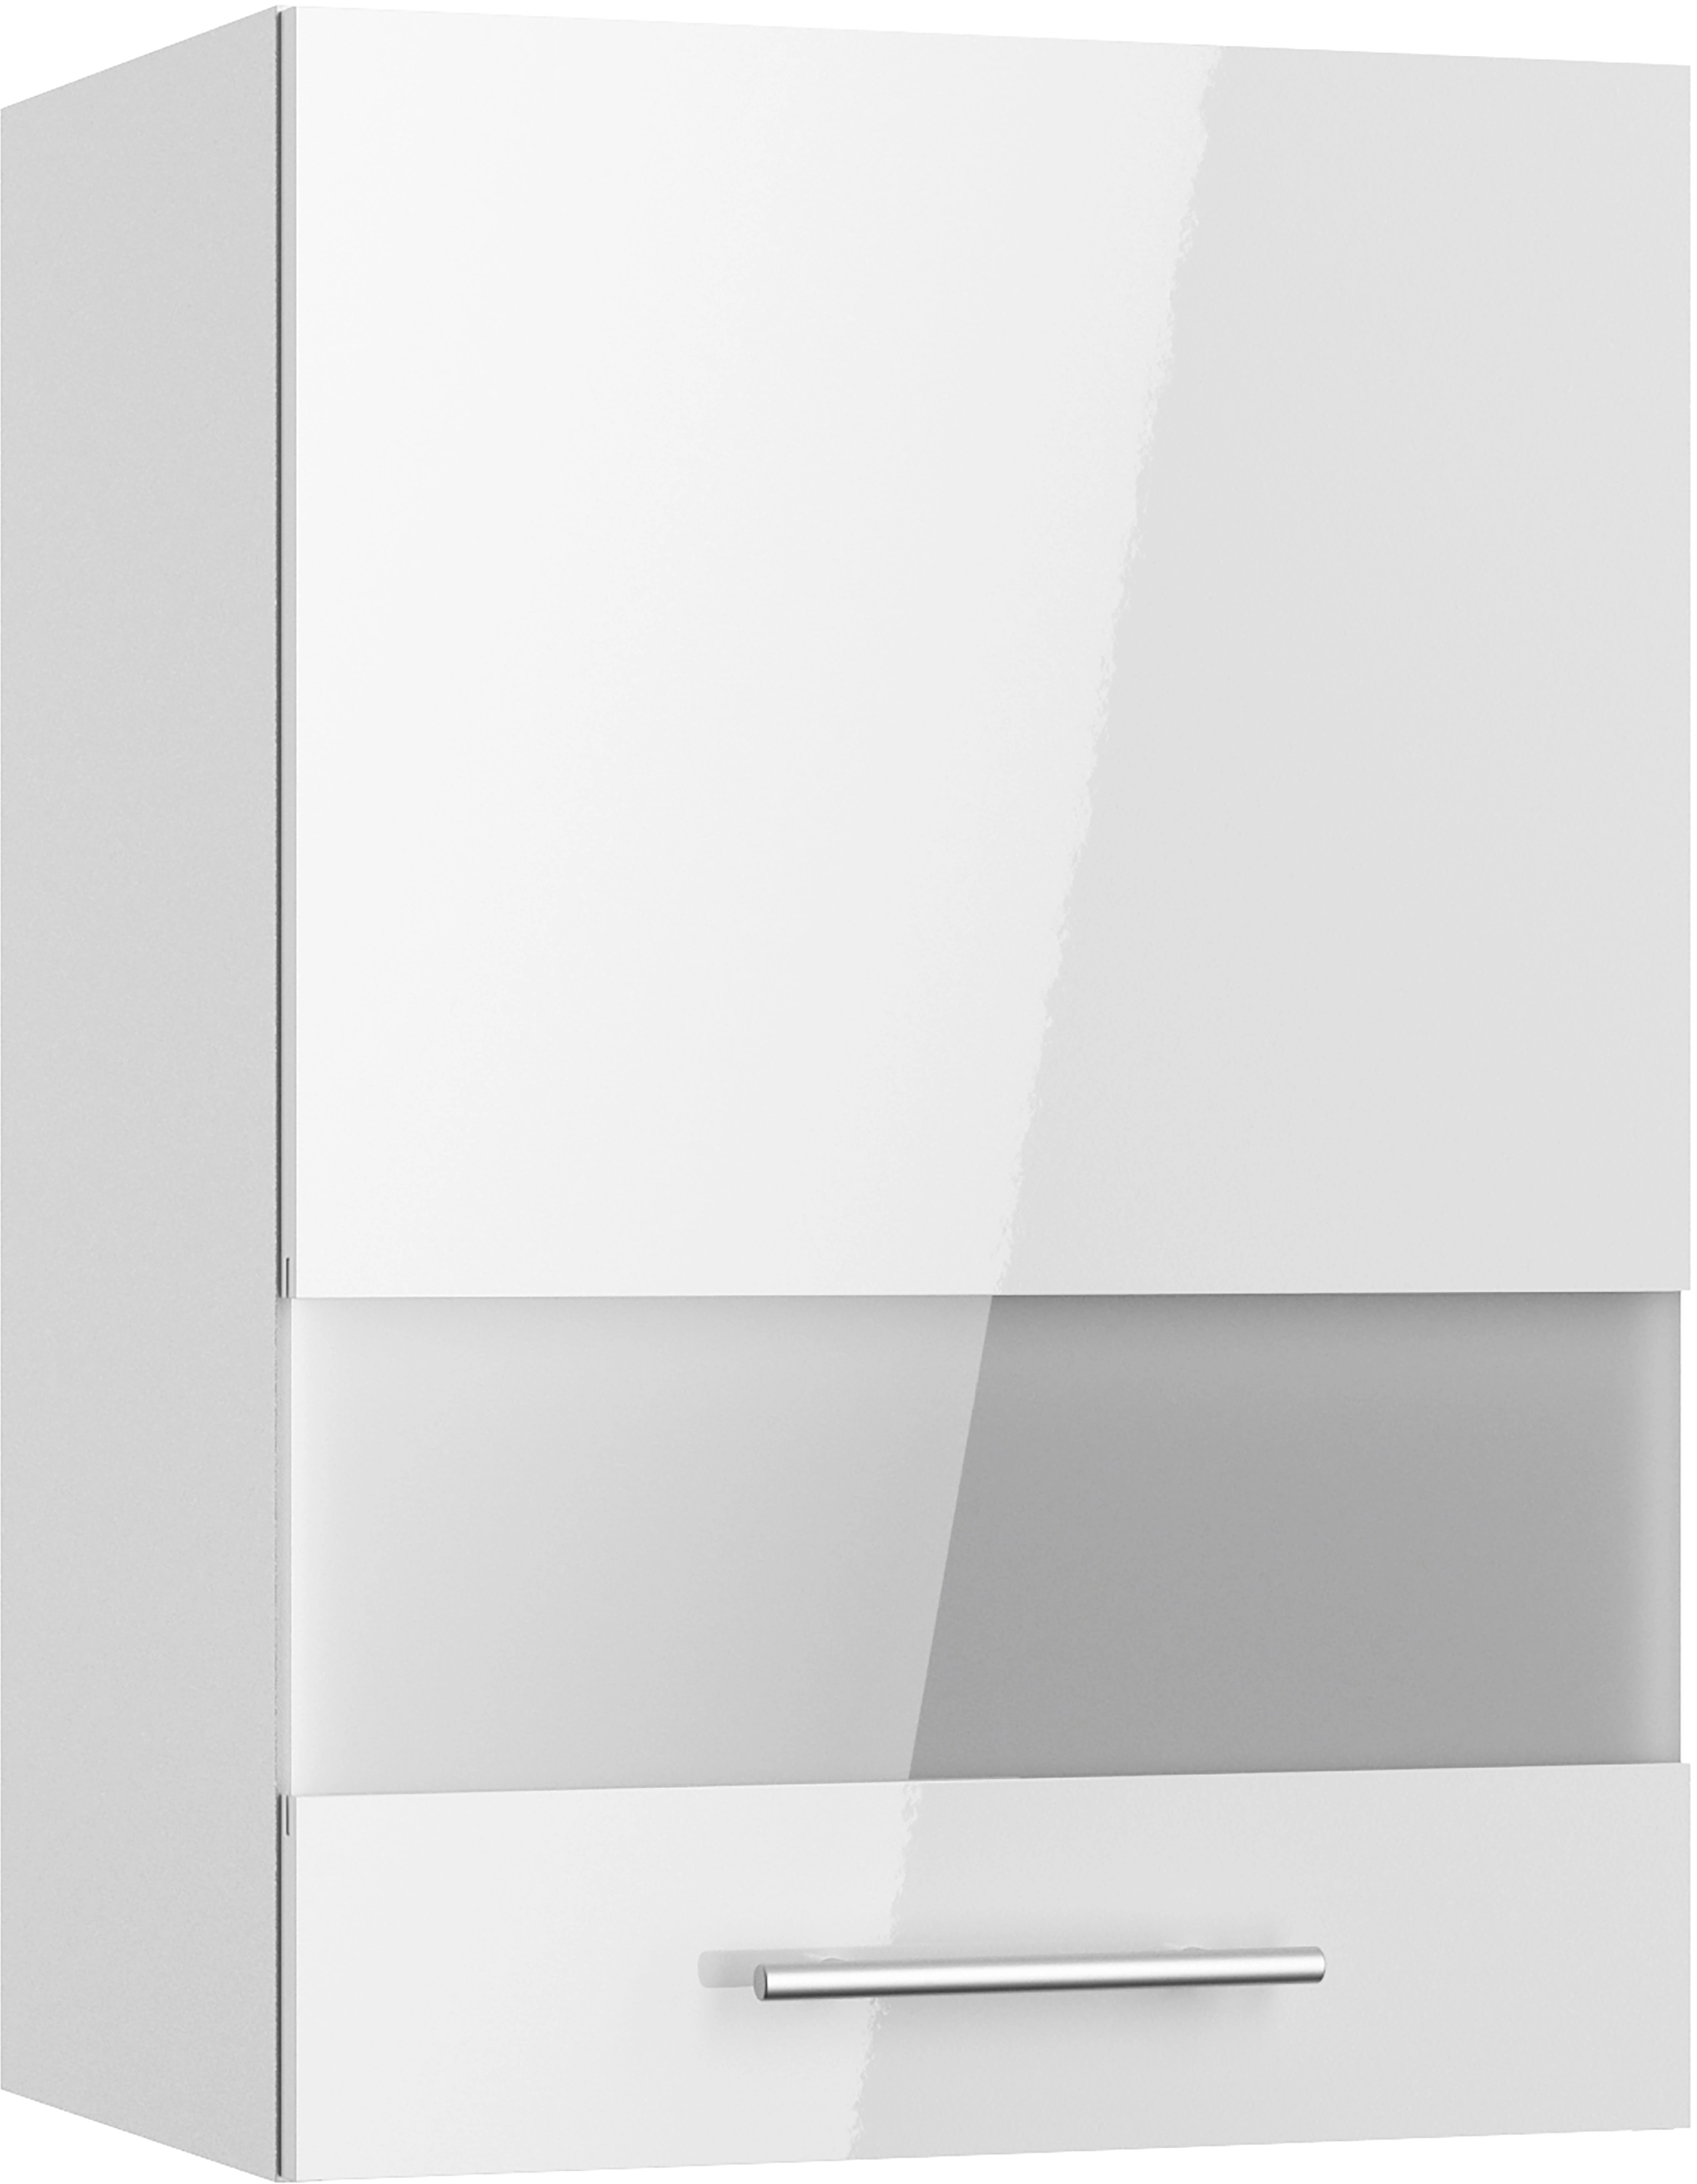 Optifit Oberschrank mit x x Rurik986 70,4 Glassegment cm cm kaufen bei OBI 34,9 50 cm Weiß